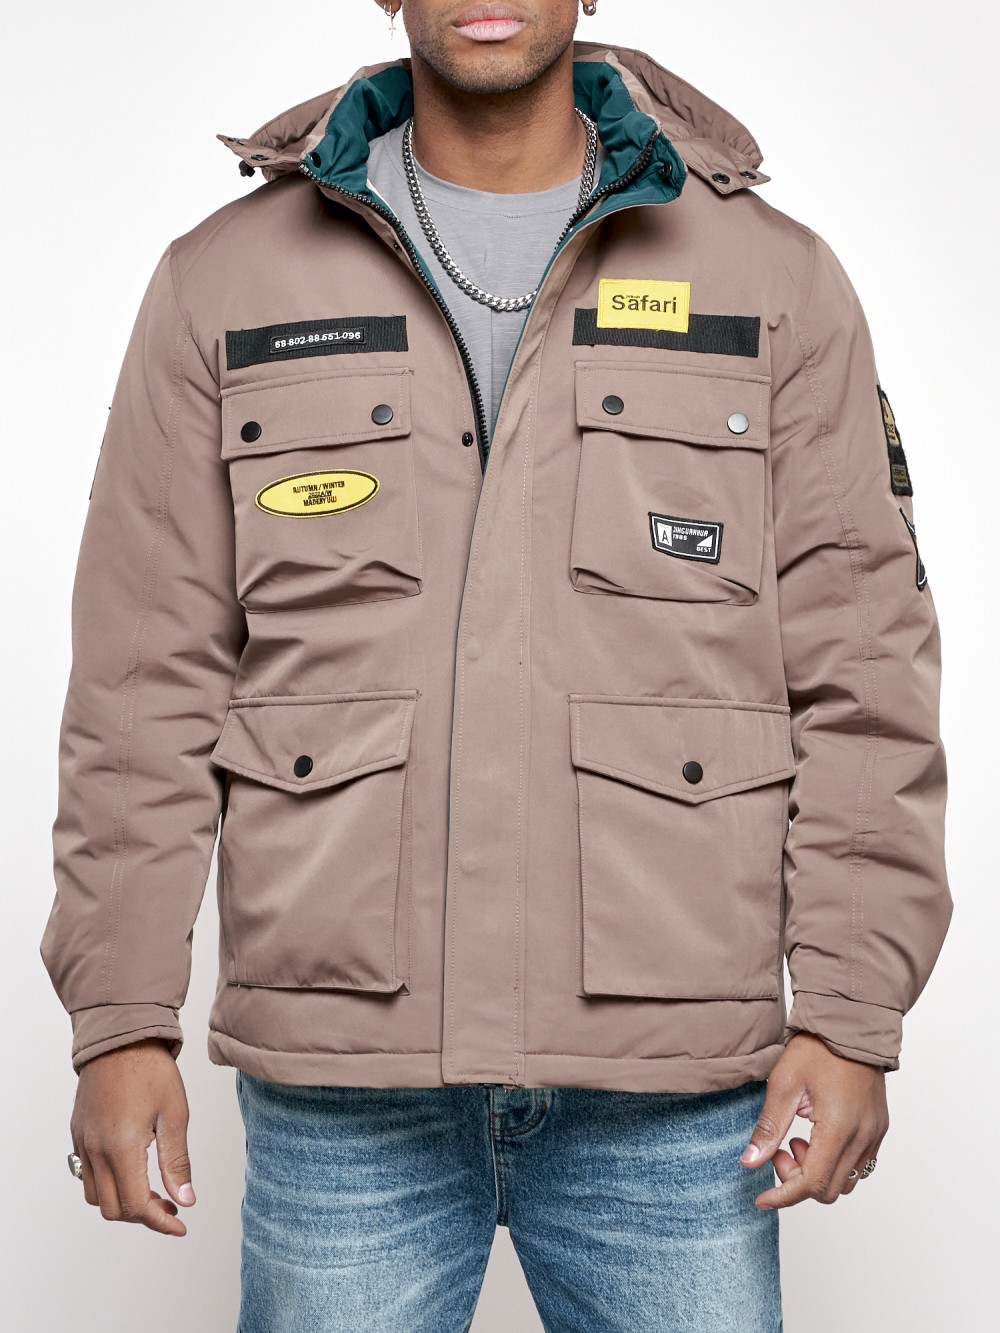 Зимняя куртка мужская AD88905 коричневая M